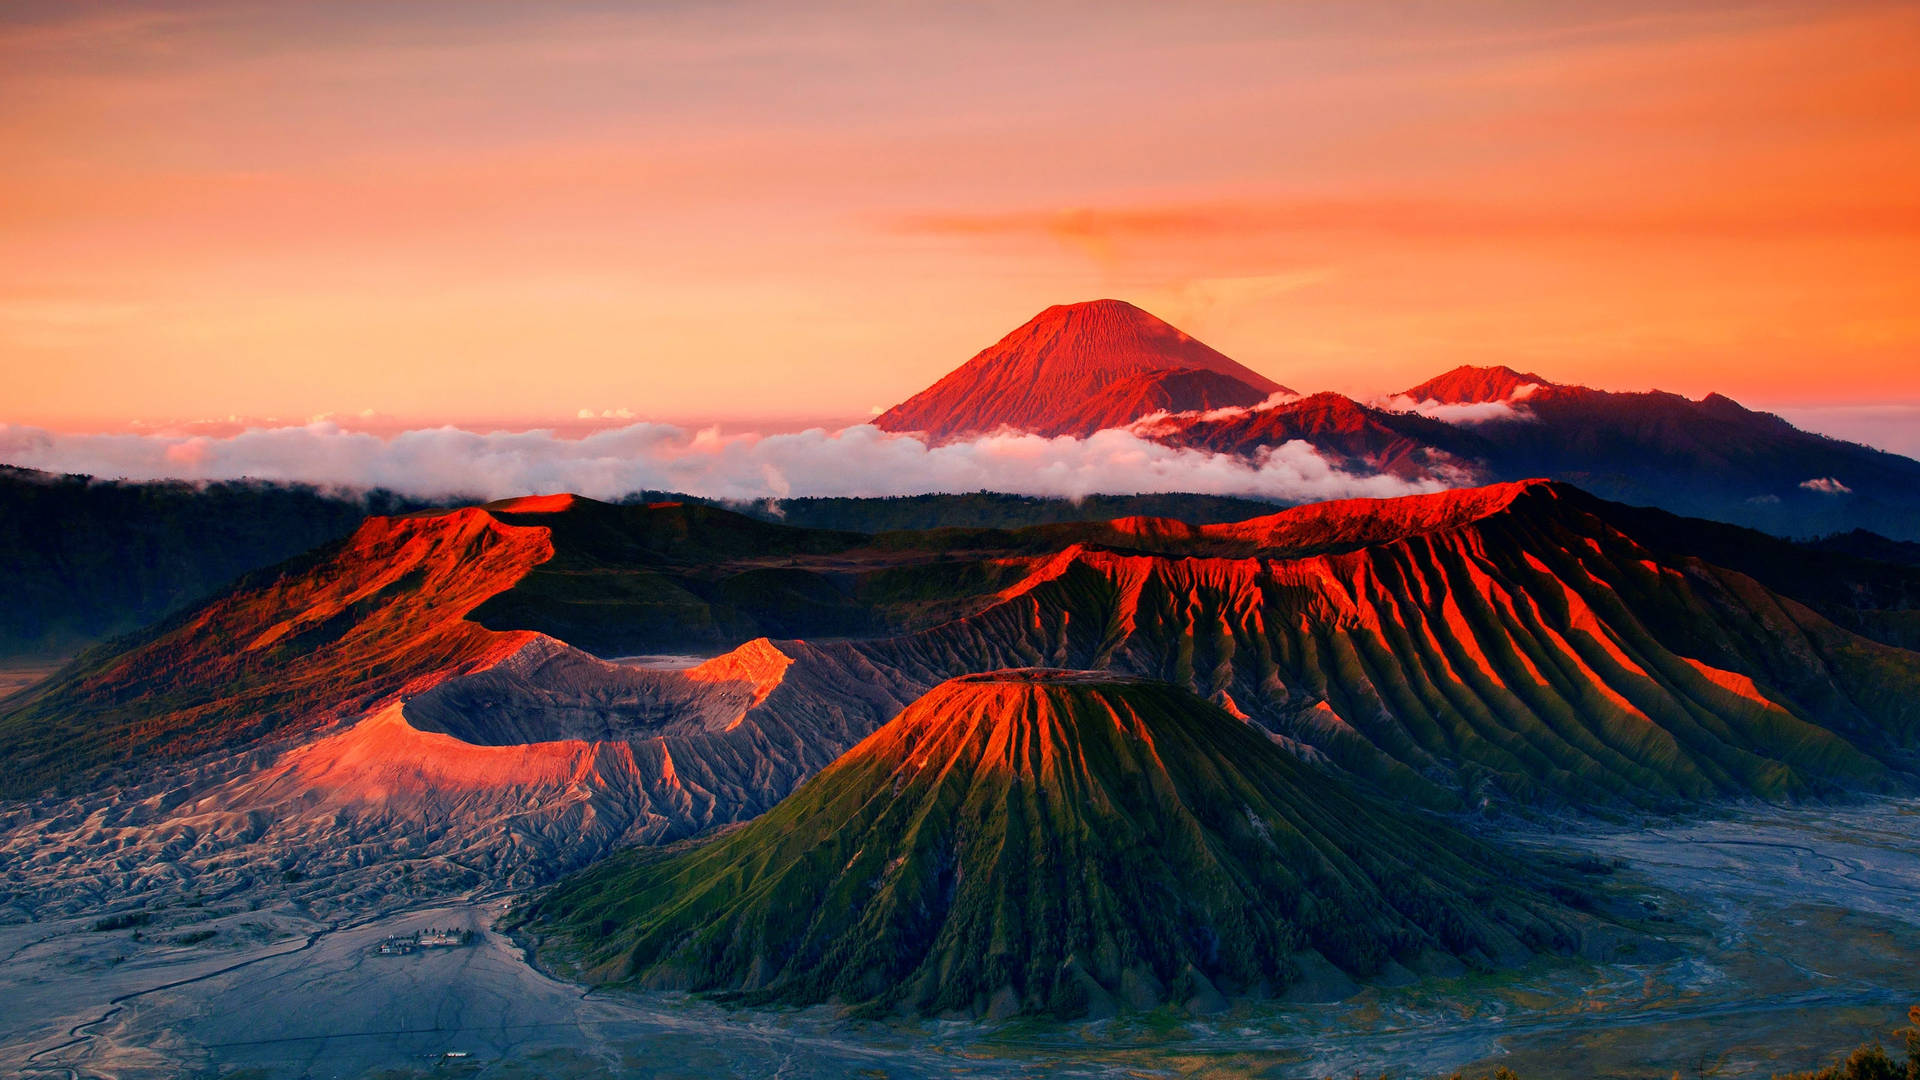 Jakartaes La Capital De Indonesia, Mount Bromo Es Un Volcán Activo Situado En La Isla De Java. Fondo de pantalla